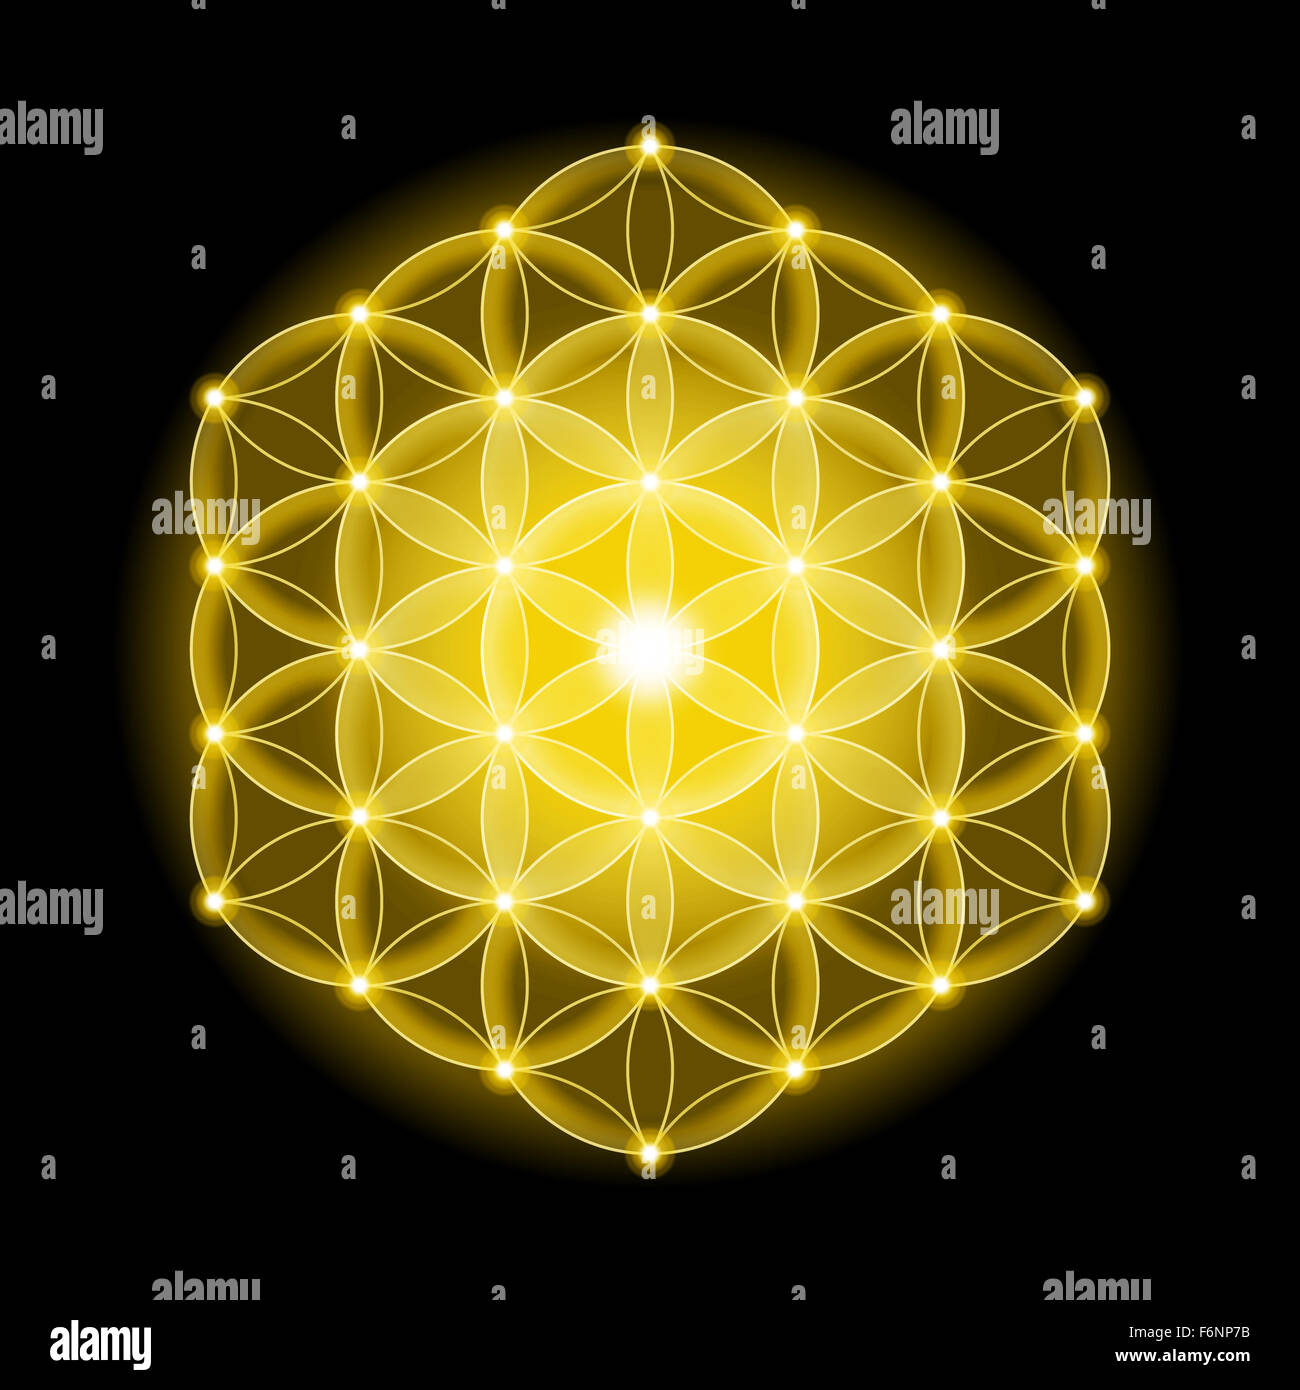 Golden cosmic Fiore della Vita con le stelle su sfondo nero, un simbolo spirituale e Geometria Sacra fin dai tempi antichi. Foto Stock